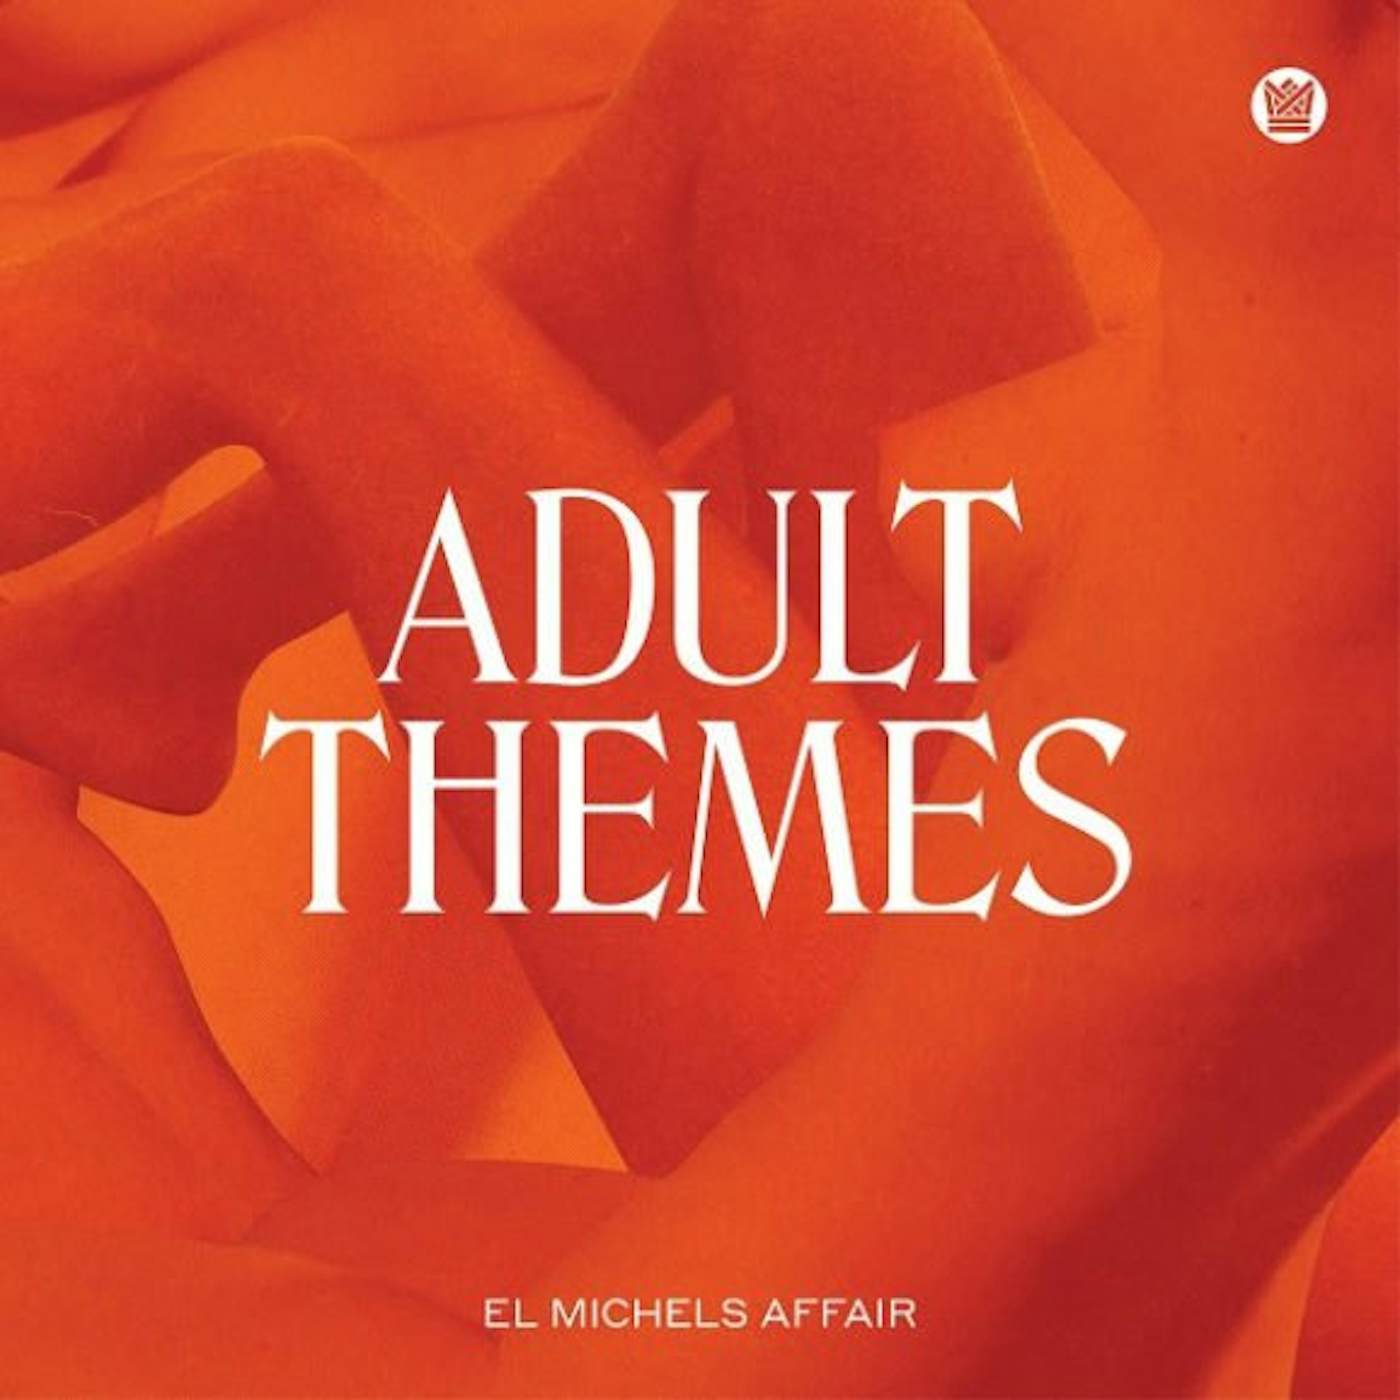 El Michels Affair ADULT THEMES CD